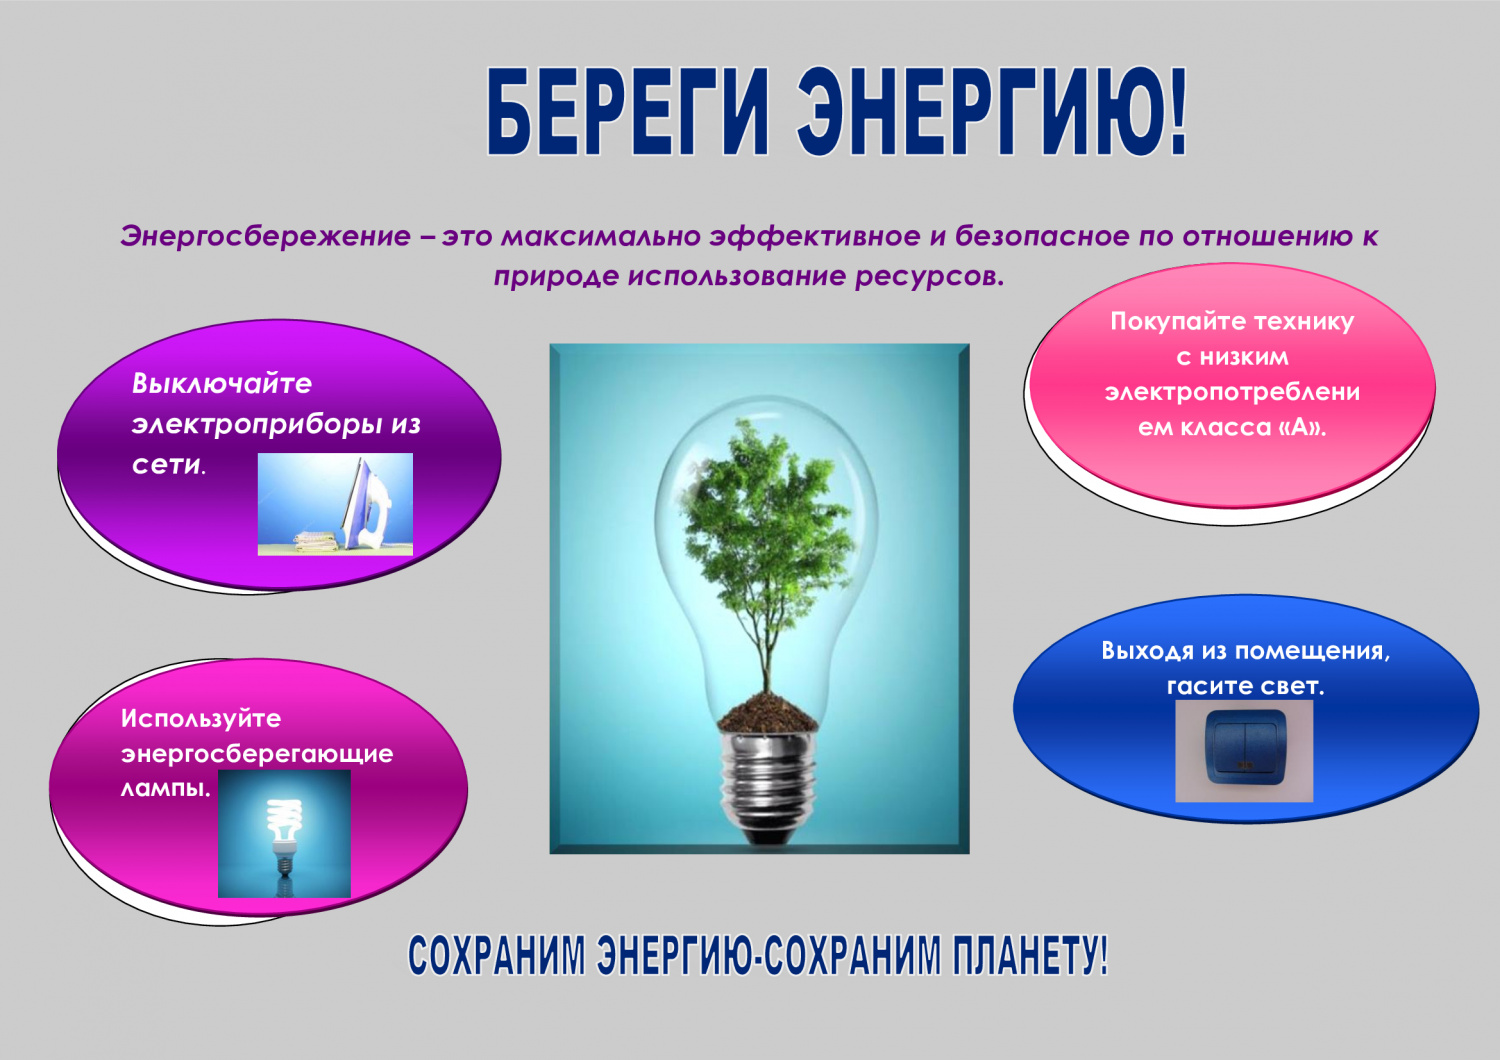 Социальная реклама в области энергосбережения и повышения энергетической эффективности..